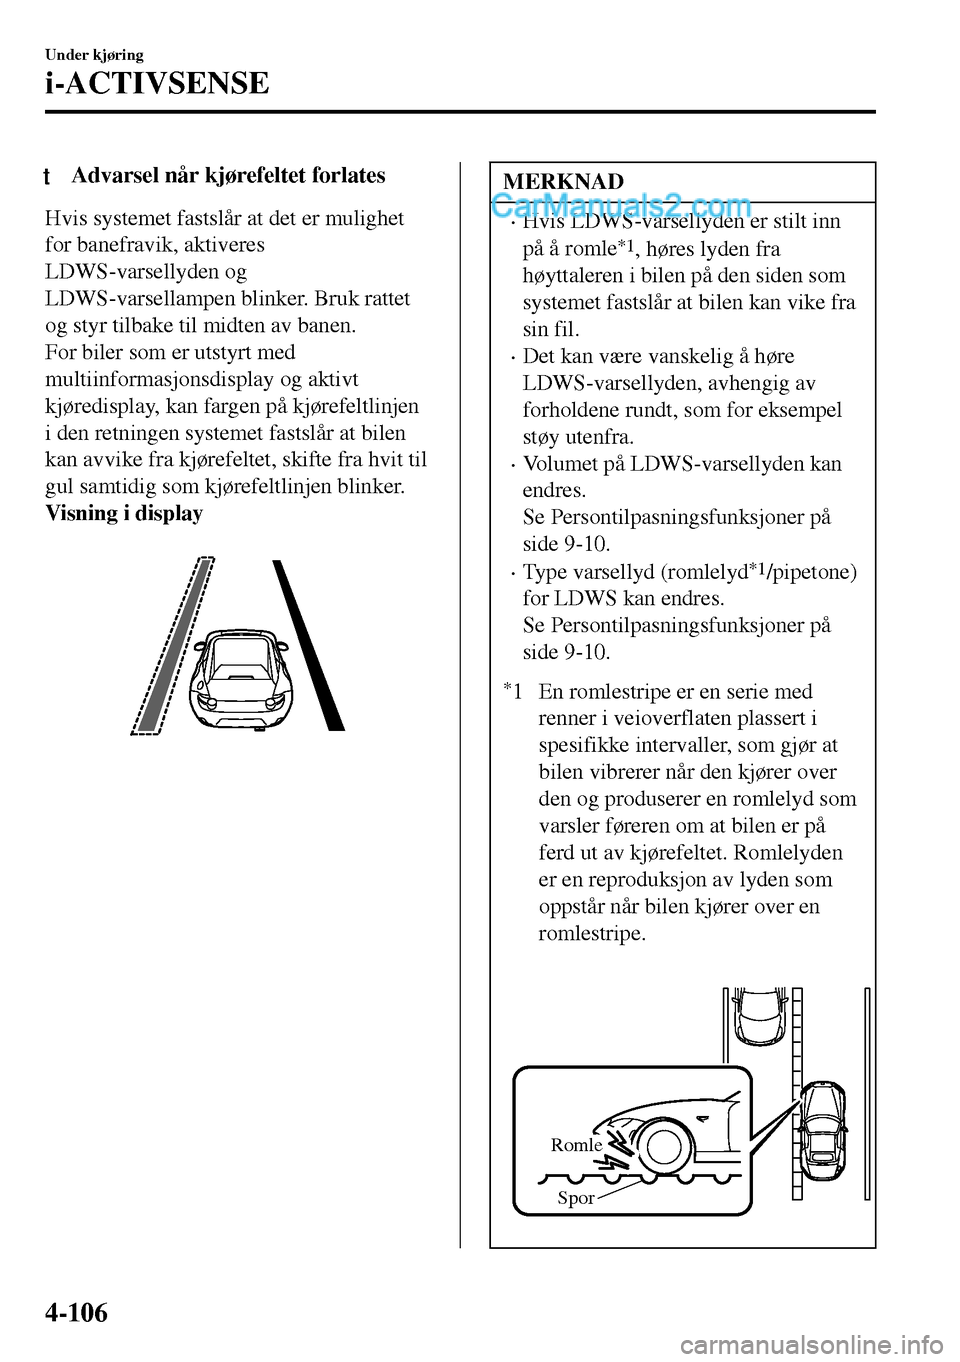 MAZDA MODEL MX-5 RF 2017  Brukerhåndbok (in Norwegian) tAdvarsel når kjørefeltet forlates
Hvis systemet fastslår at det er mulighet
for banefravik, aktiveres
LDWS-varsellyden og
LDWS-varsellampen blinker. Bruk rattet
og styr tilbake til midten av banen